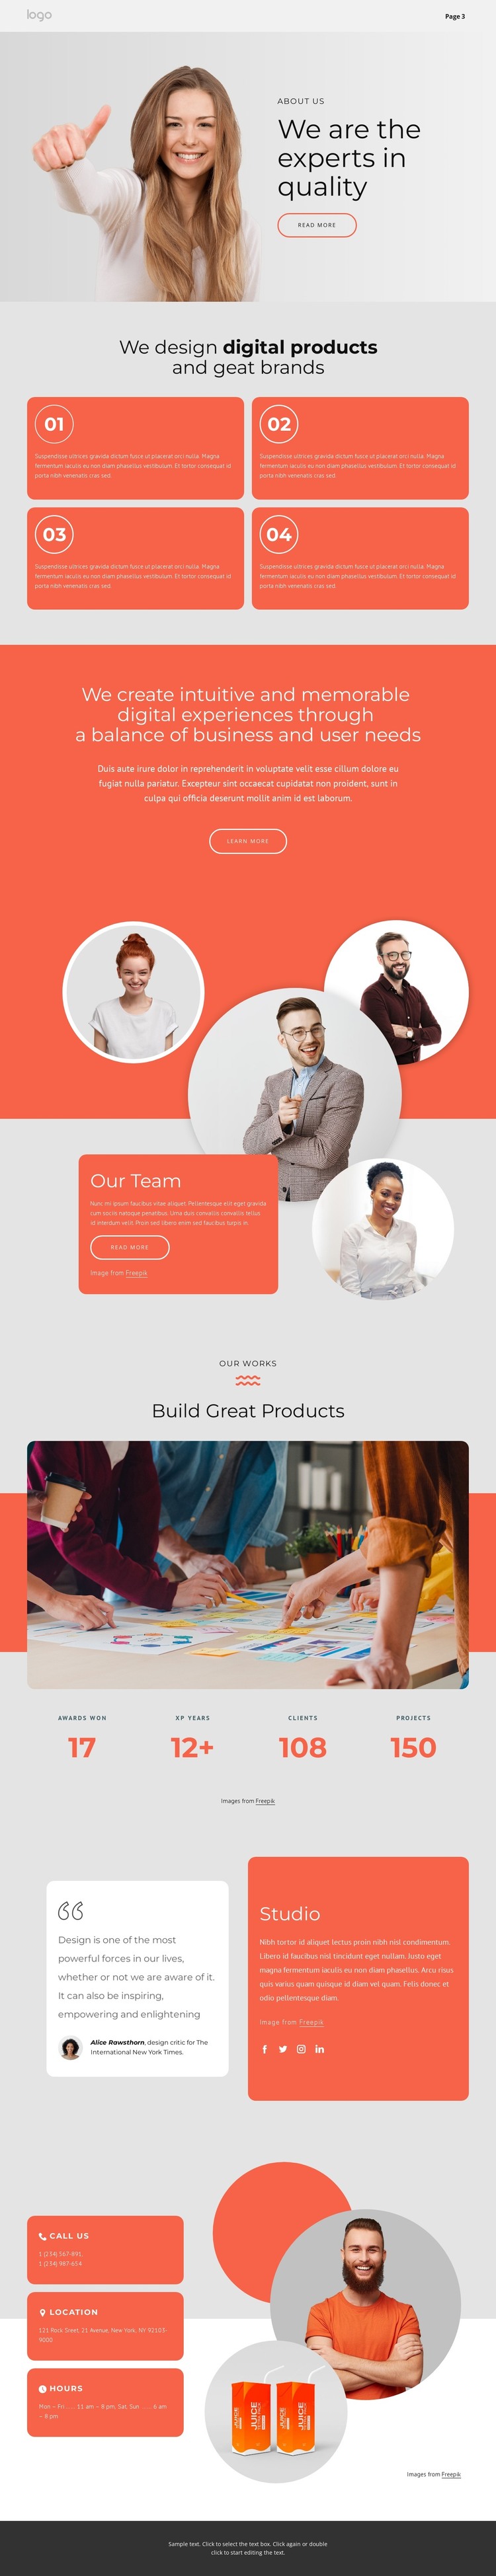 We design great brands Web Design